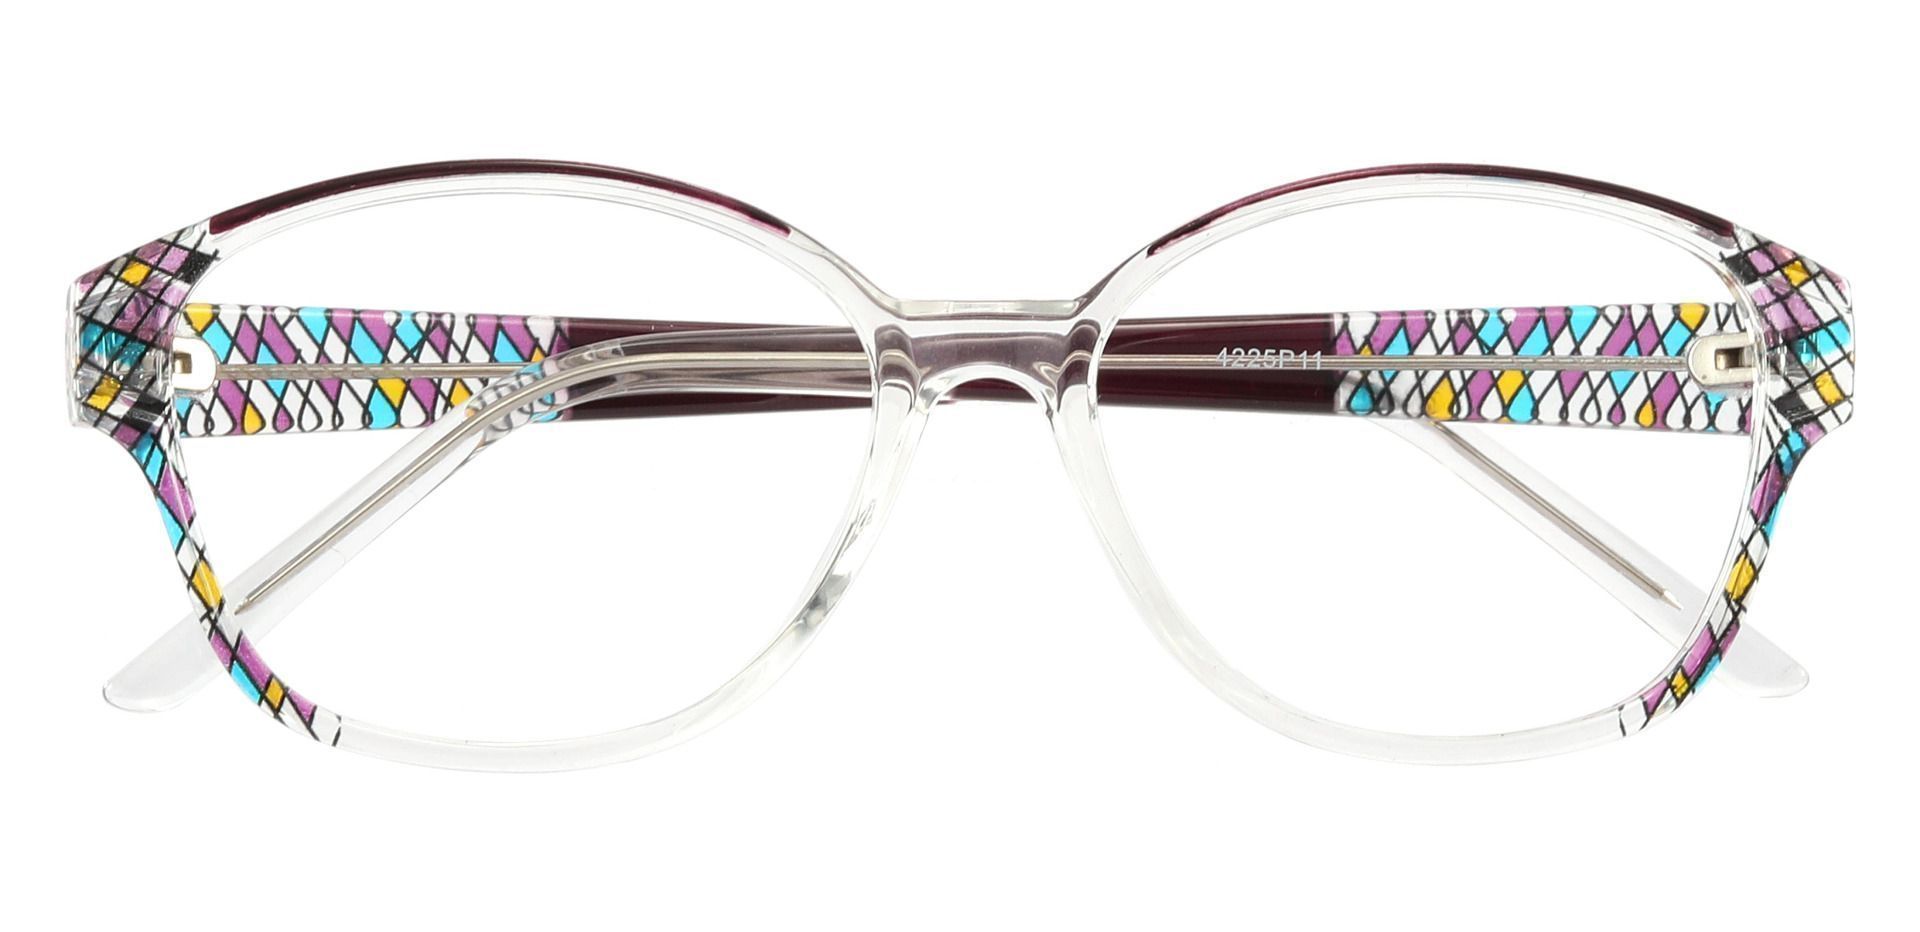 Moira Oval Non-Rx Glasses - Purple